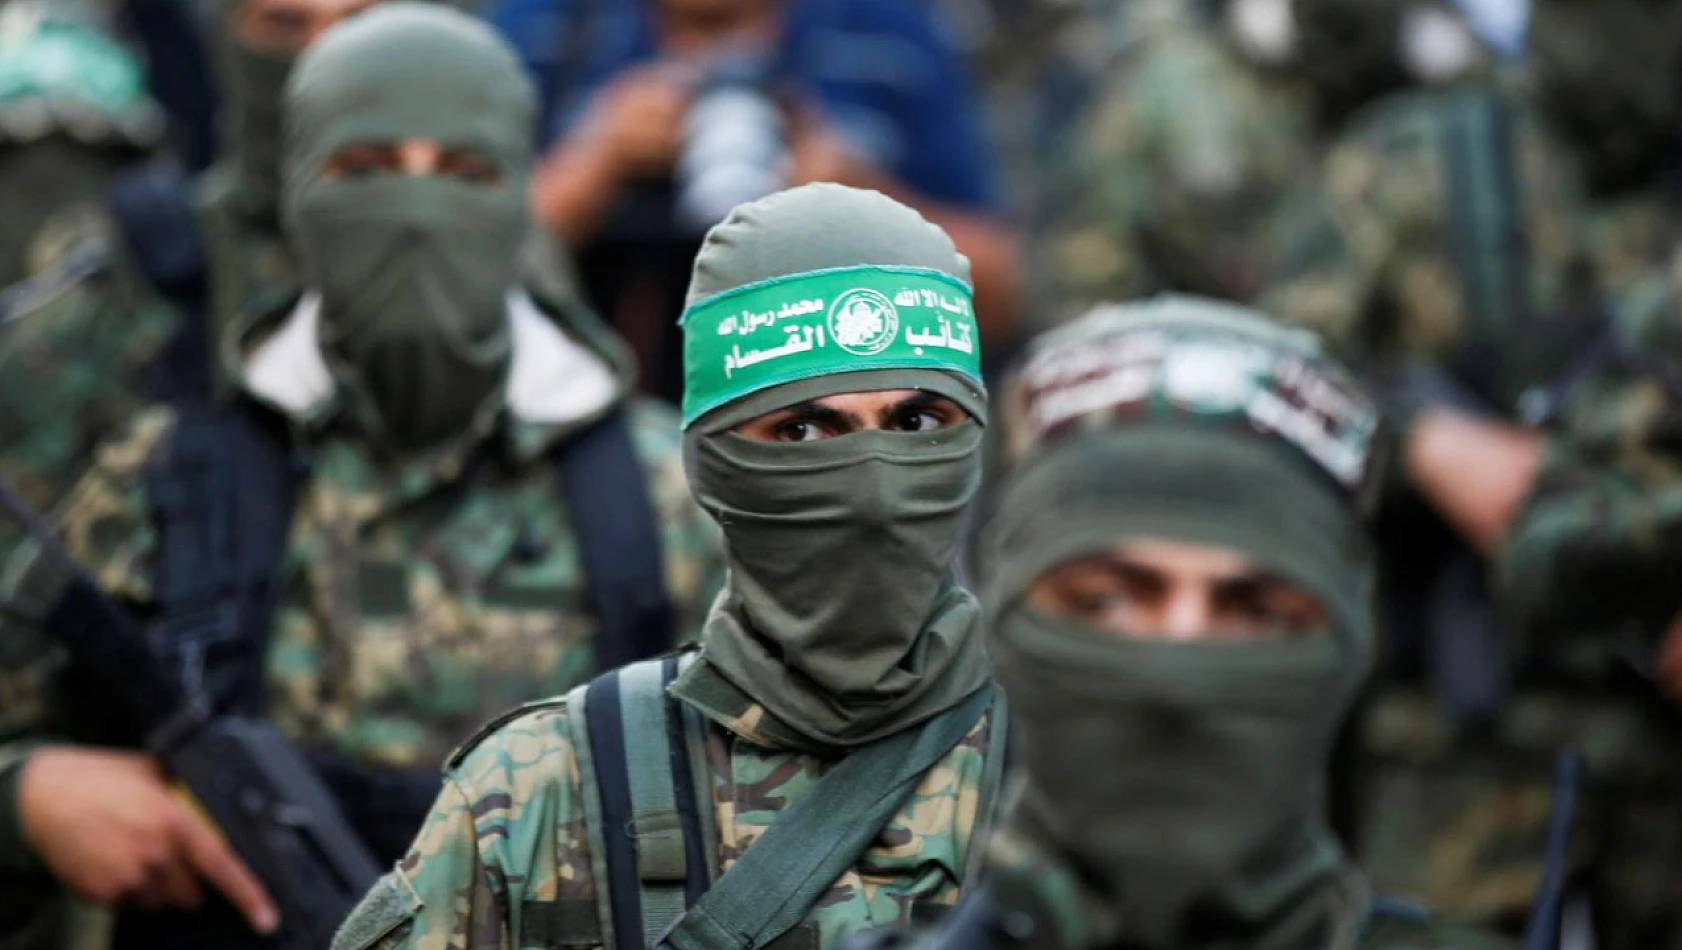 Aksa Tufanı nedir? Hamas nedir? Hamas neresi? İşte ayrıntılar...